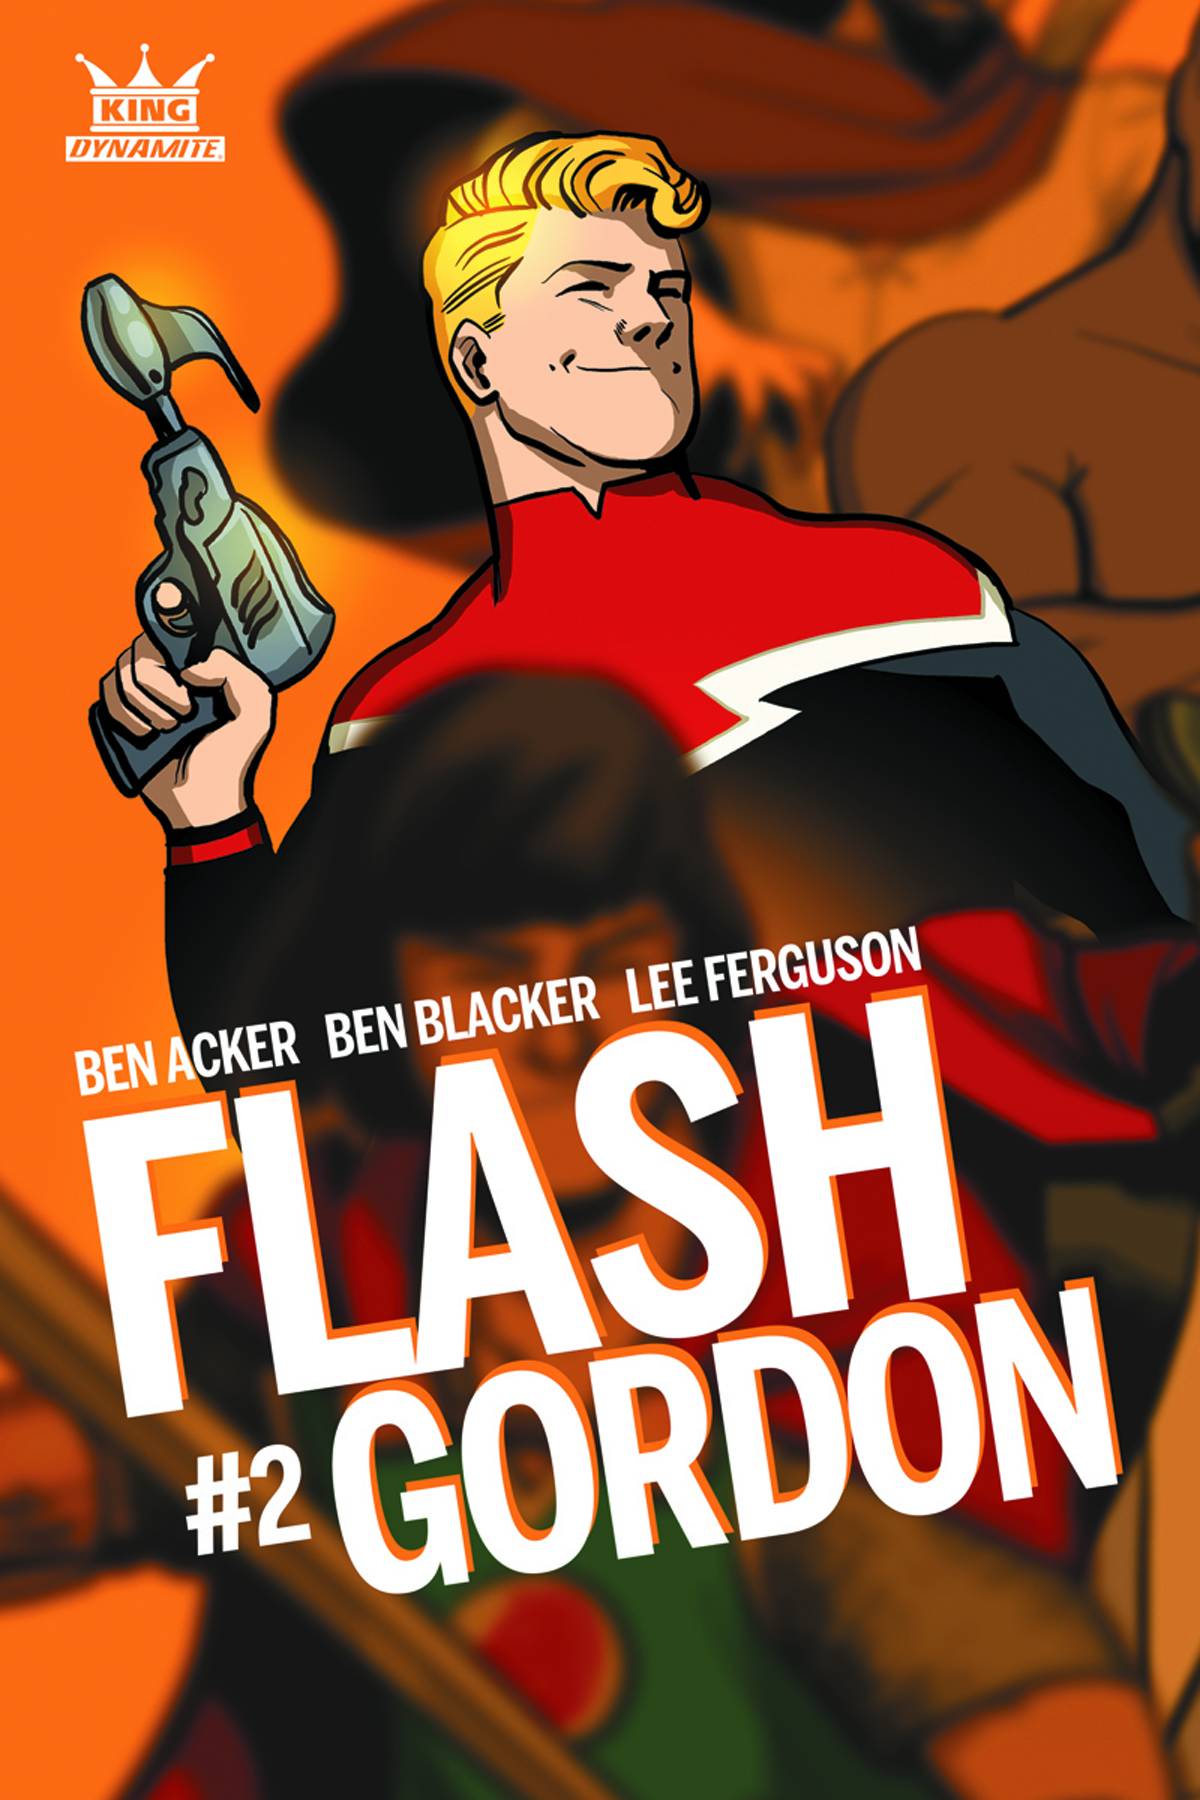 King Flash Gordon #2